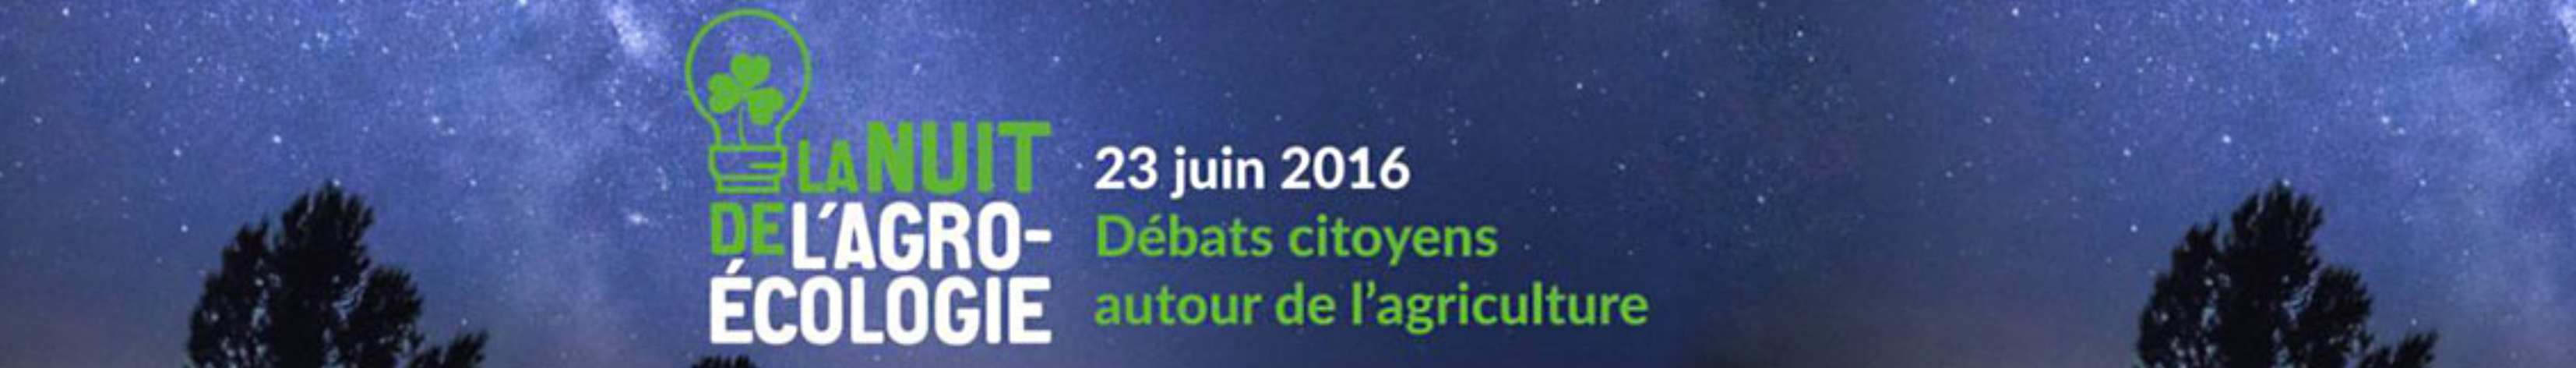 La Nuit de l'Agro-Ecologie - June 2016